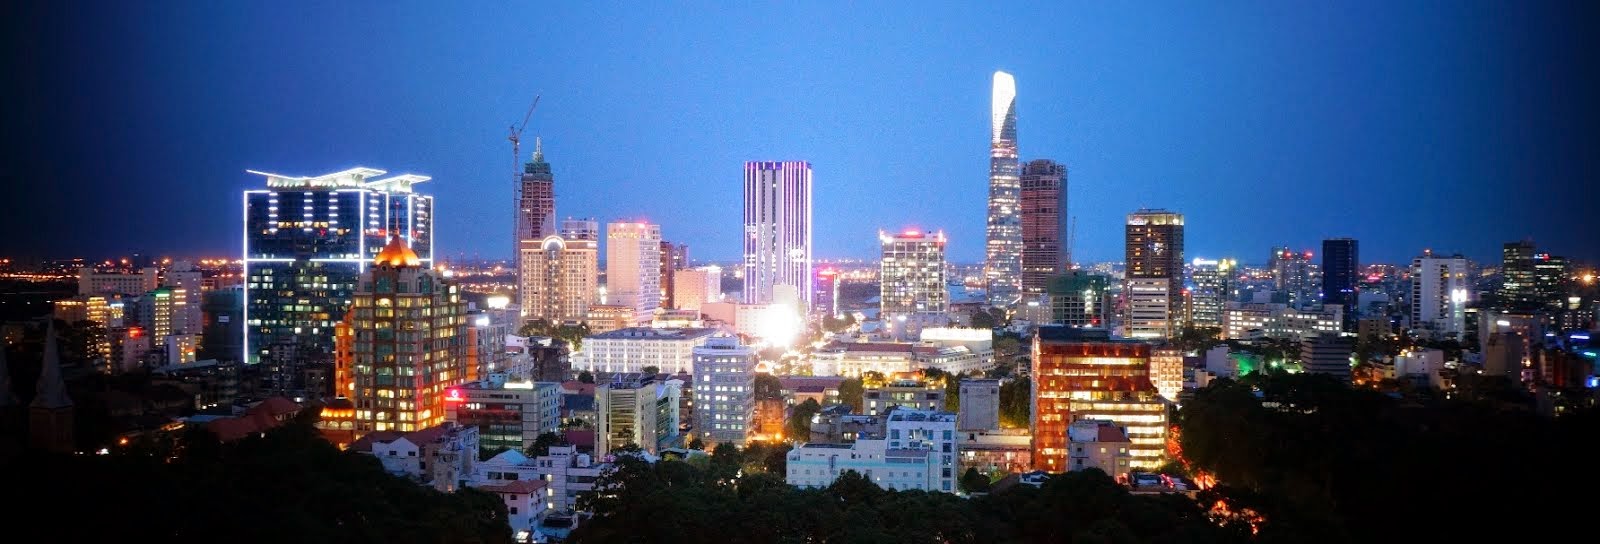 SAILING TOWER Cho Thuê Tại Hồ Chí Minh